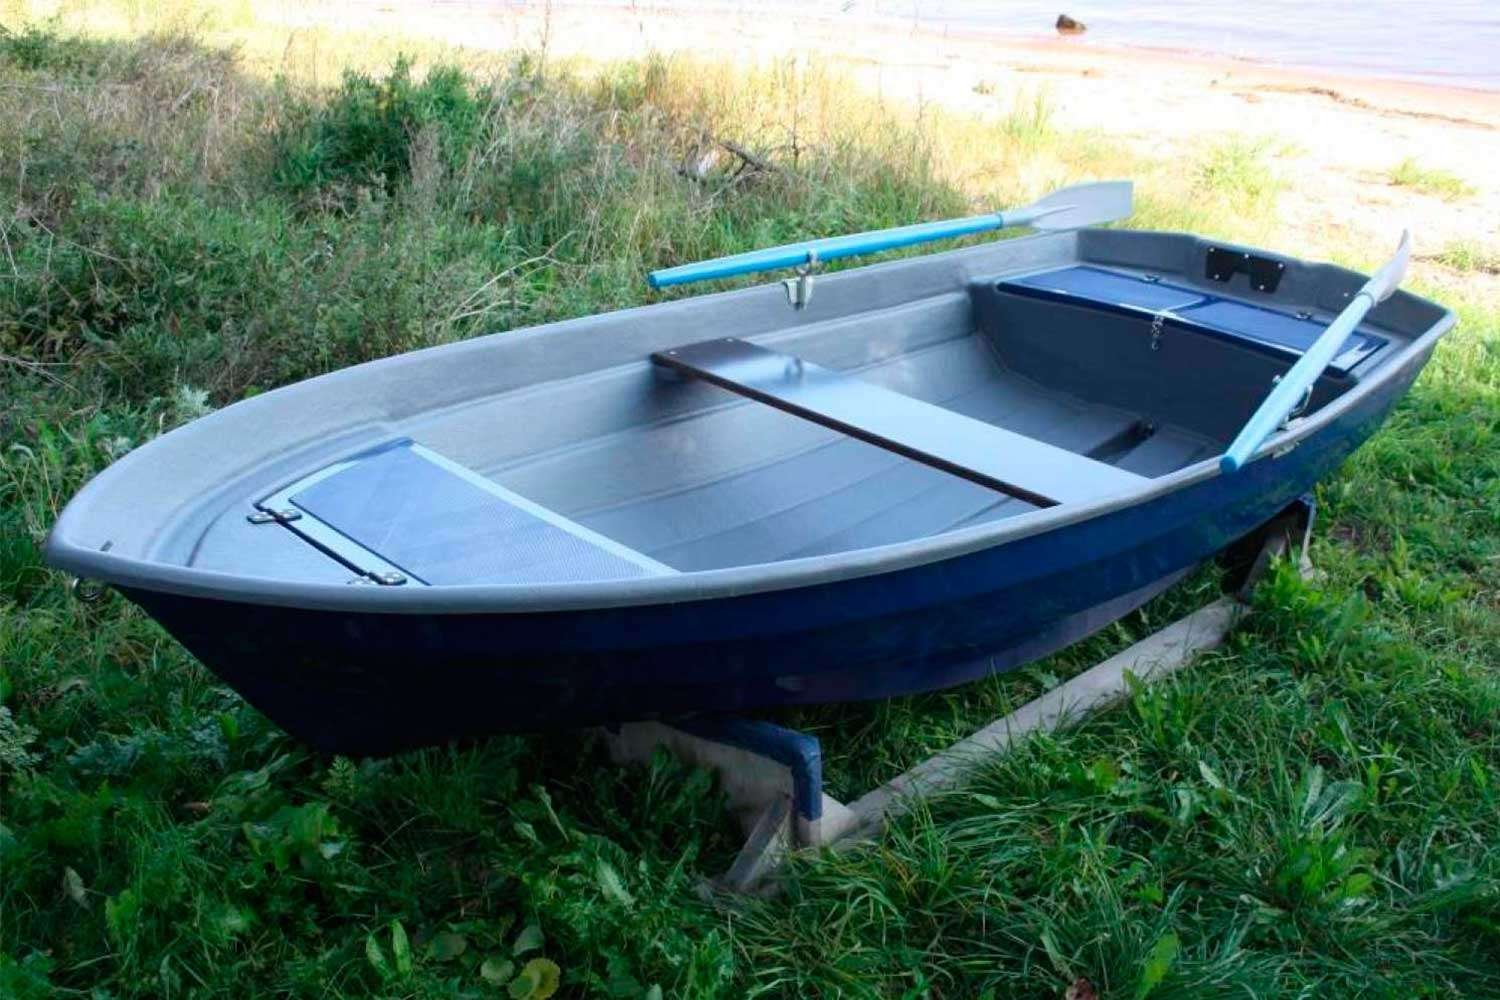 Купить лодку бу в нижегородской области. Лодка Мираж 320. Лодка Касатка стеклопластиковая. Лодка Буян 320. Лодка стеклопластиковая Мираж 270.